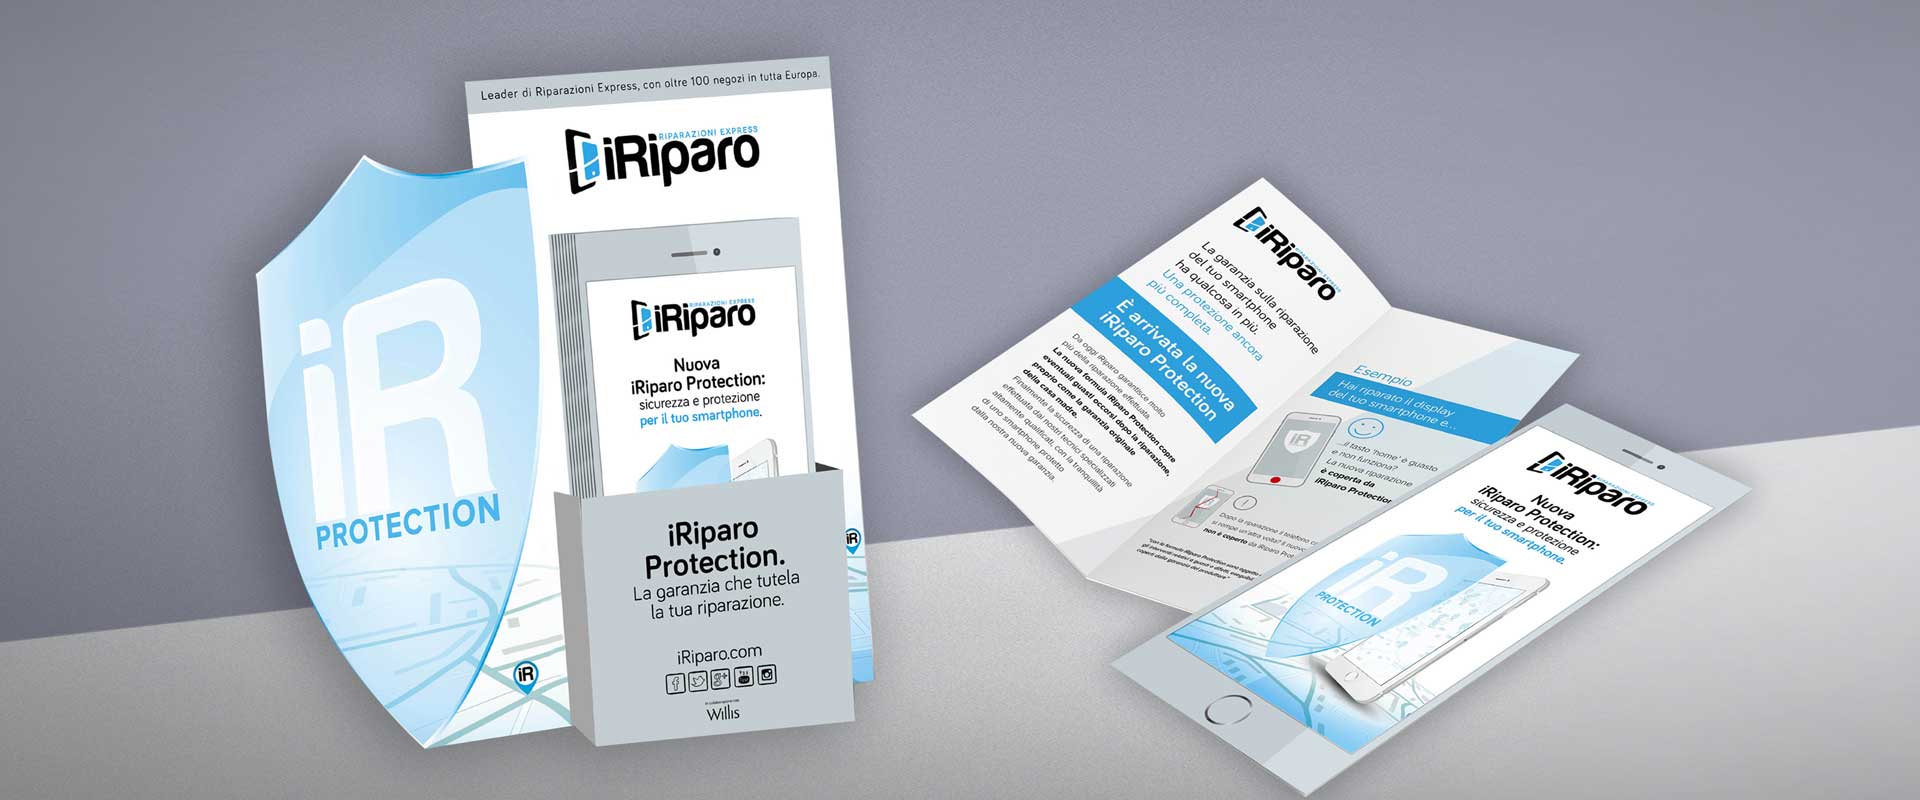 iRiparo in-store materials